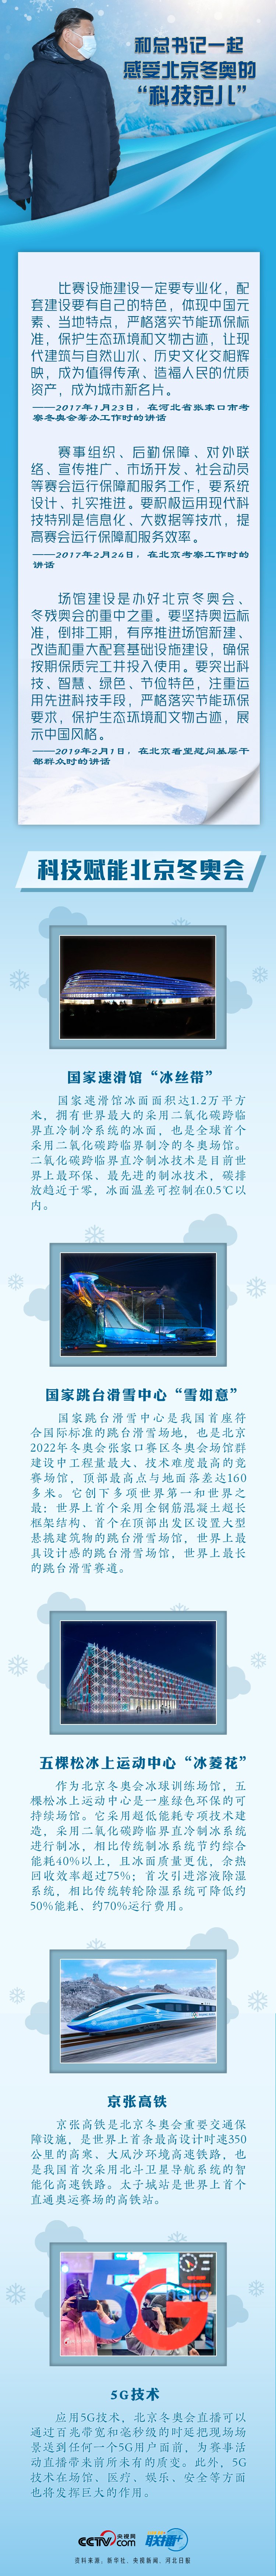 联播+丨快来！和总书记一起感受北京冬奥的“科技范儿”